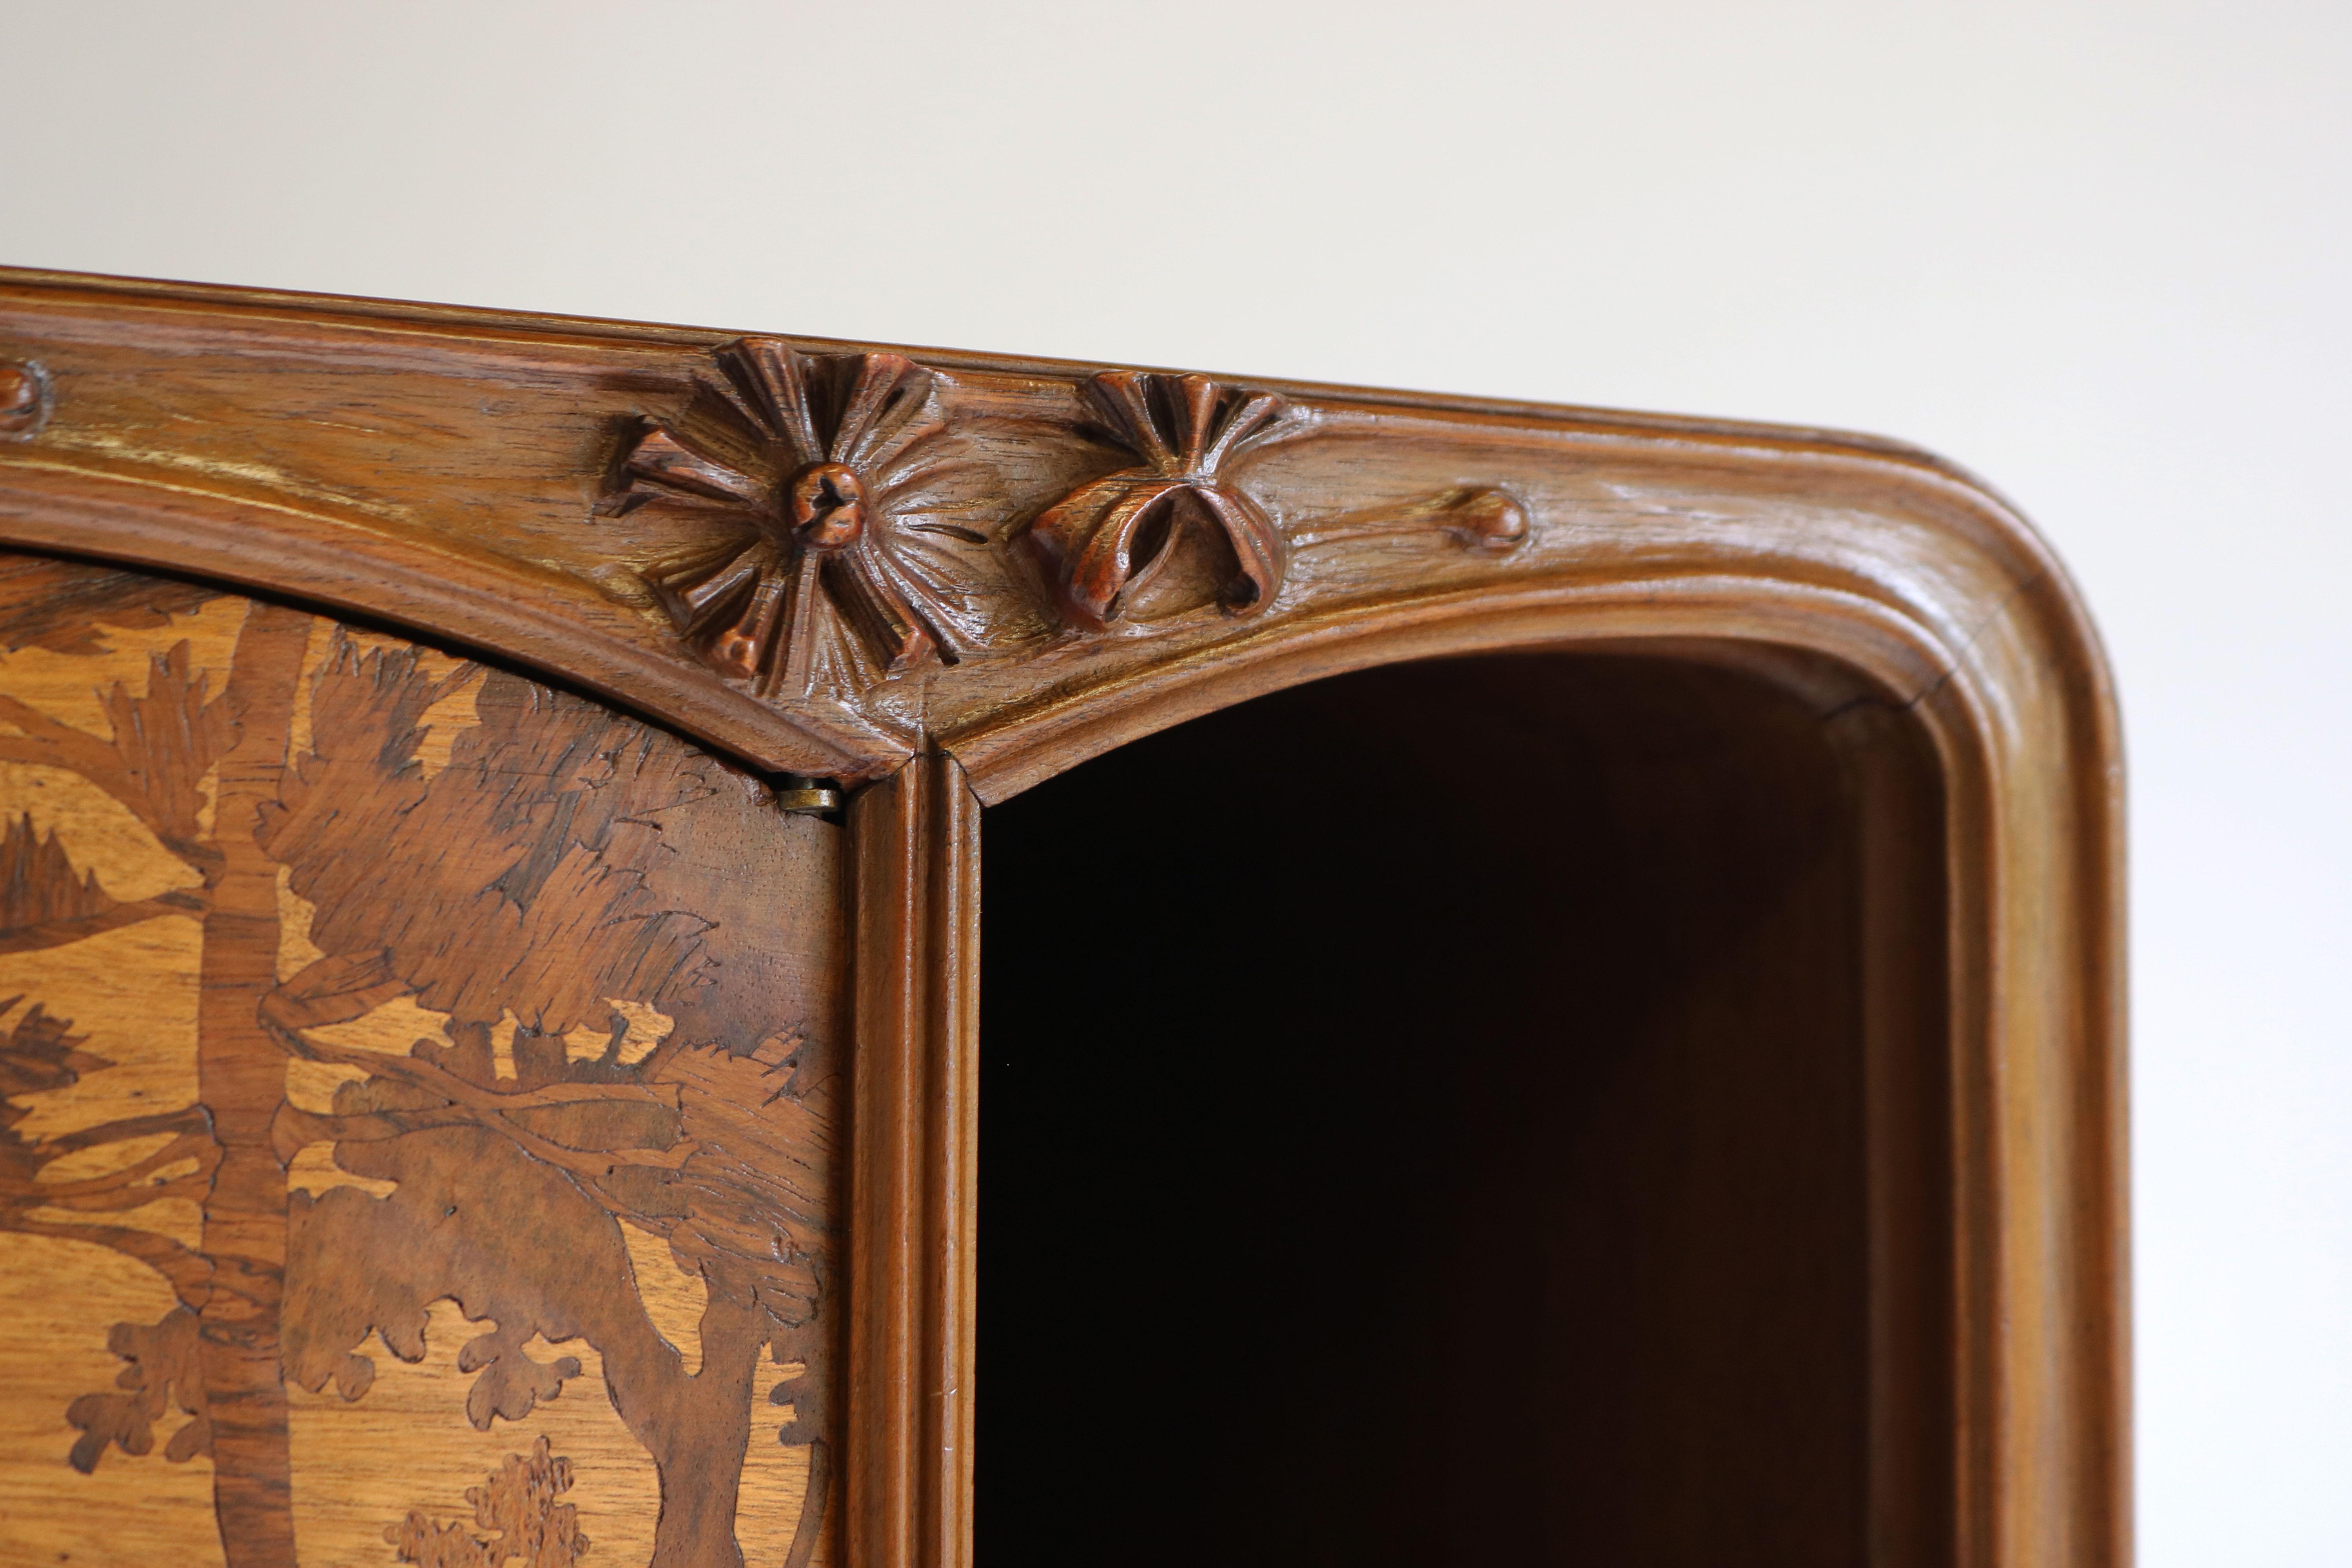 Exceptional Art Nouveau Cabinet by Louis Majorelle 1900 French Antique Nancy For Sale 9